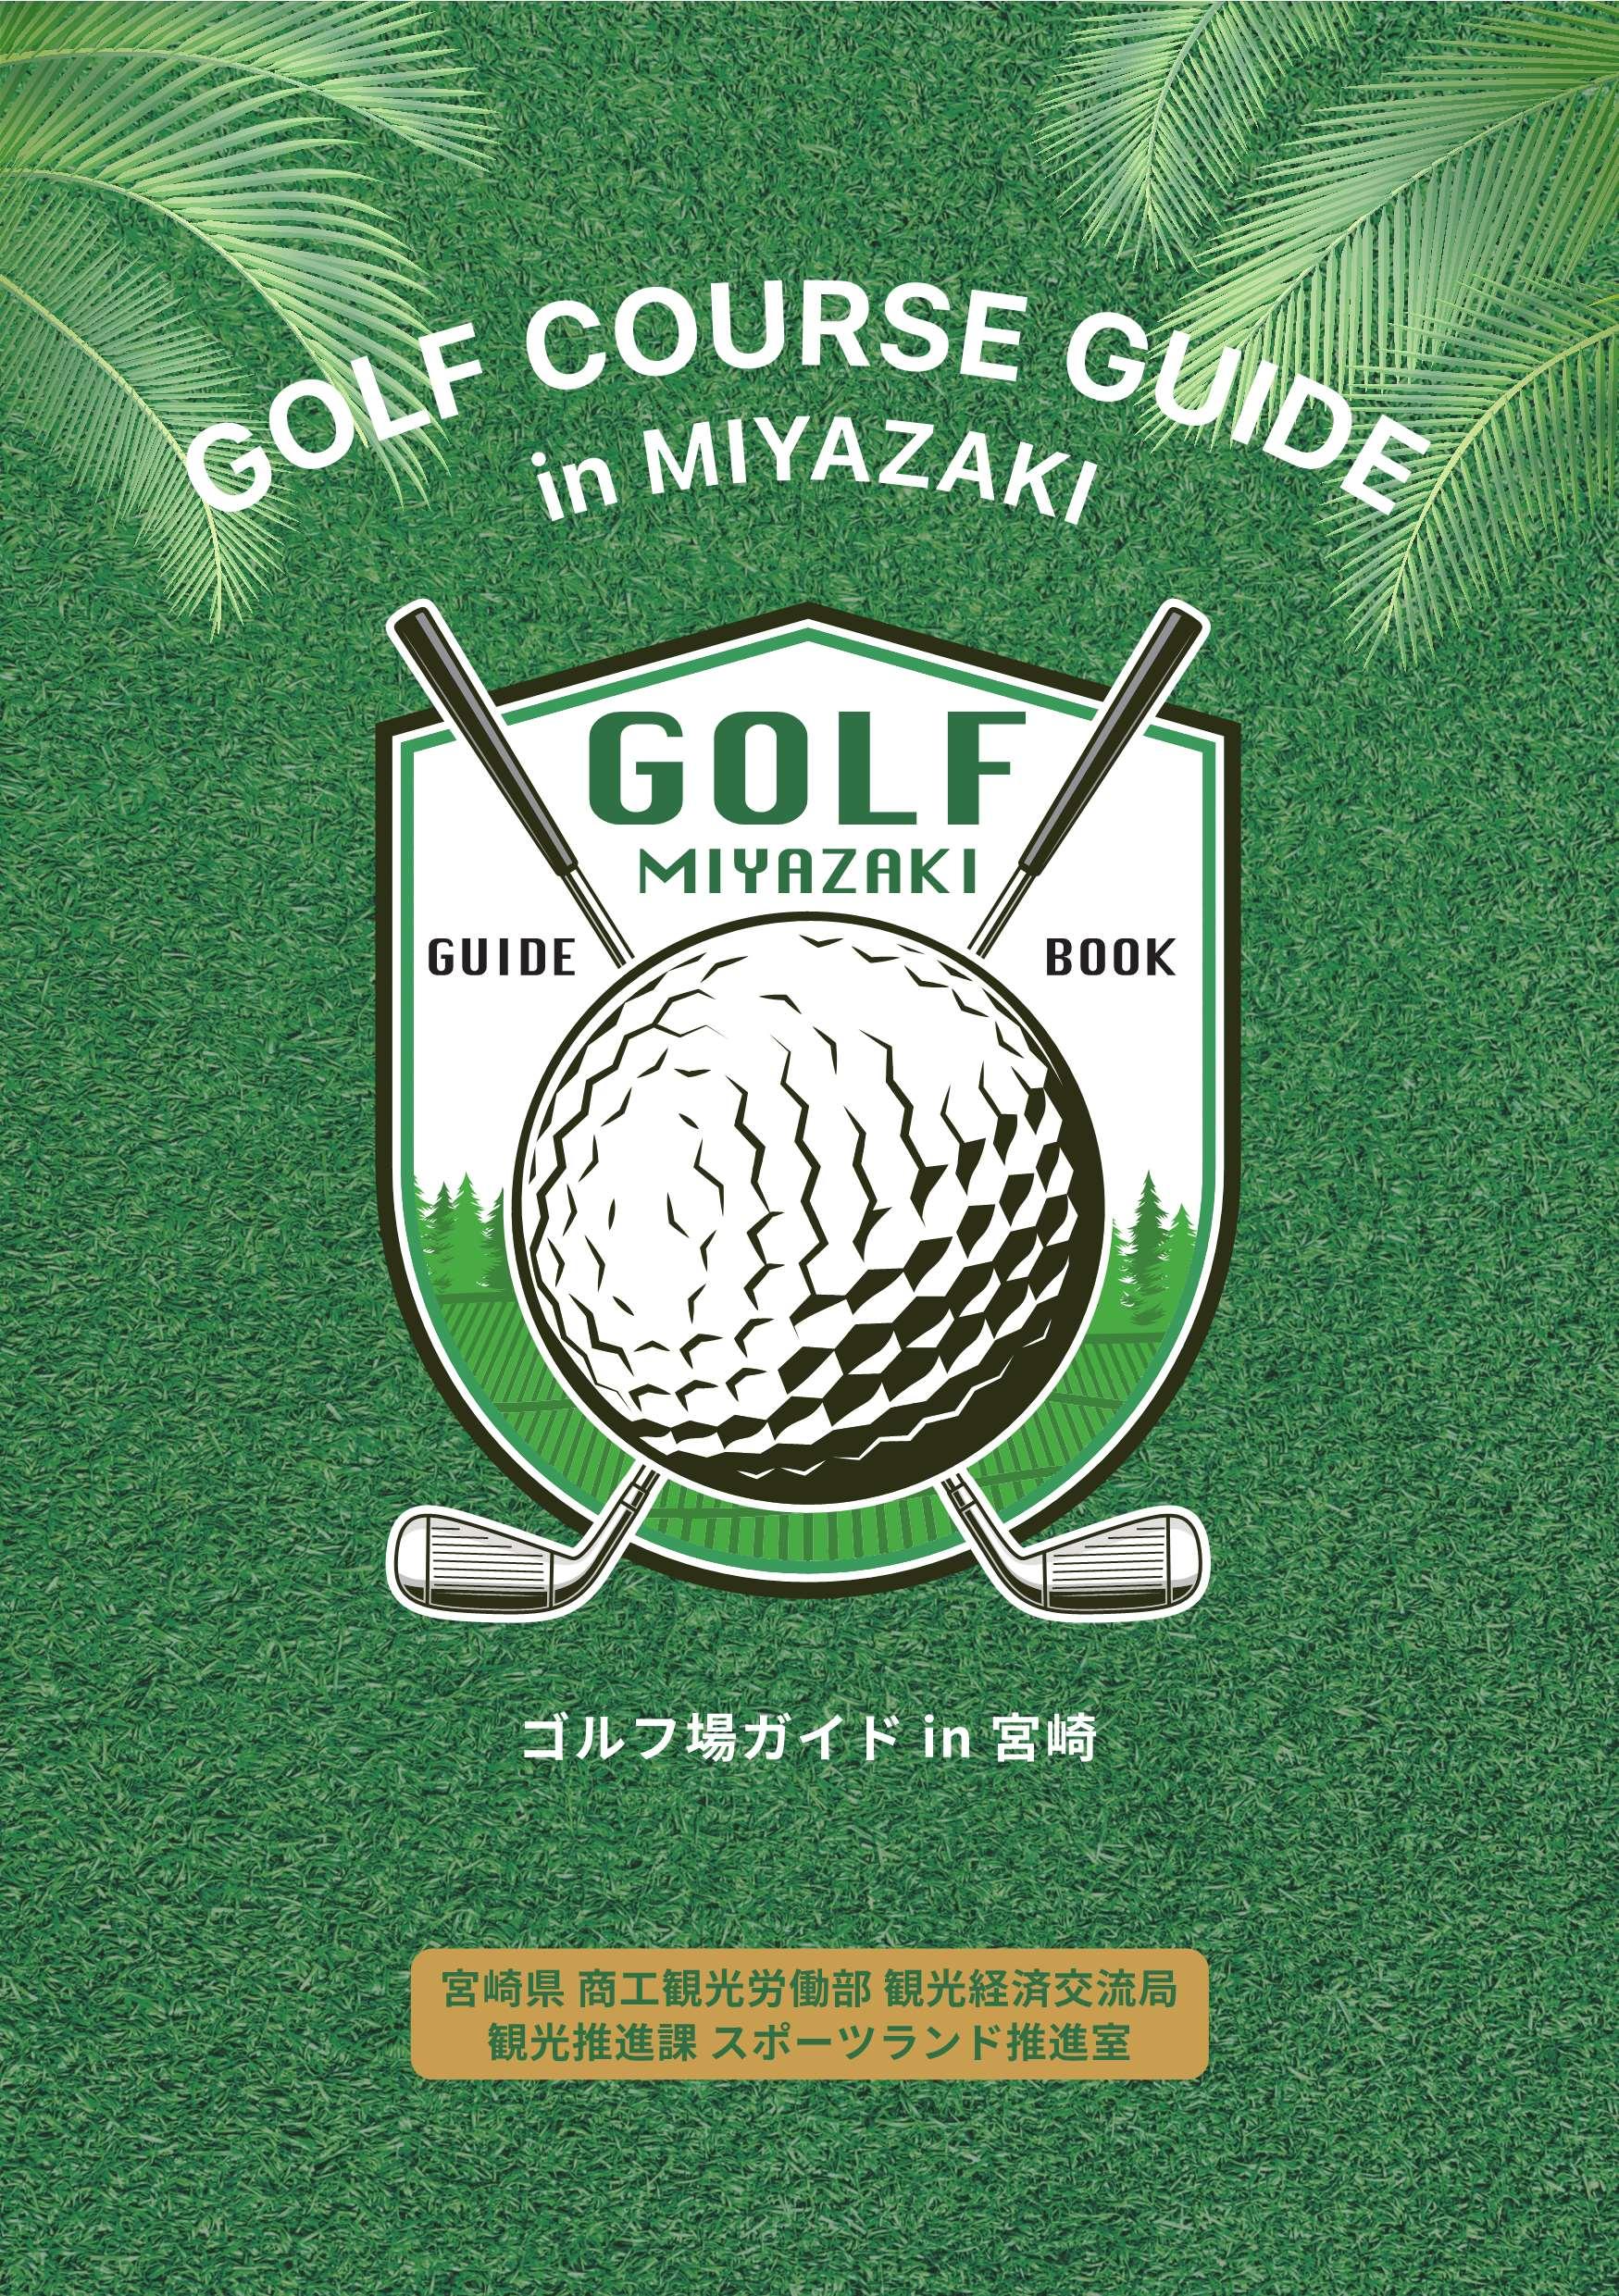 宮崎ゴルフコースガイドブックがリニューアルしました！-1